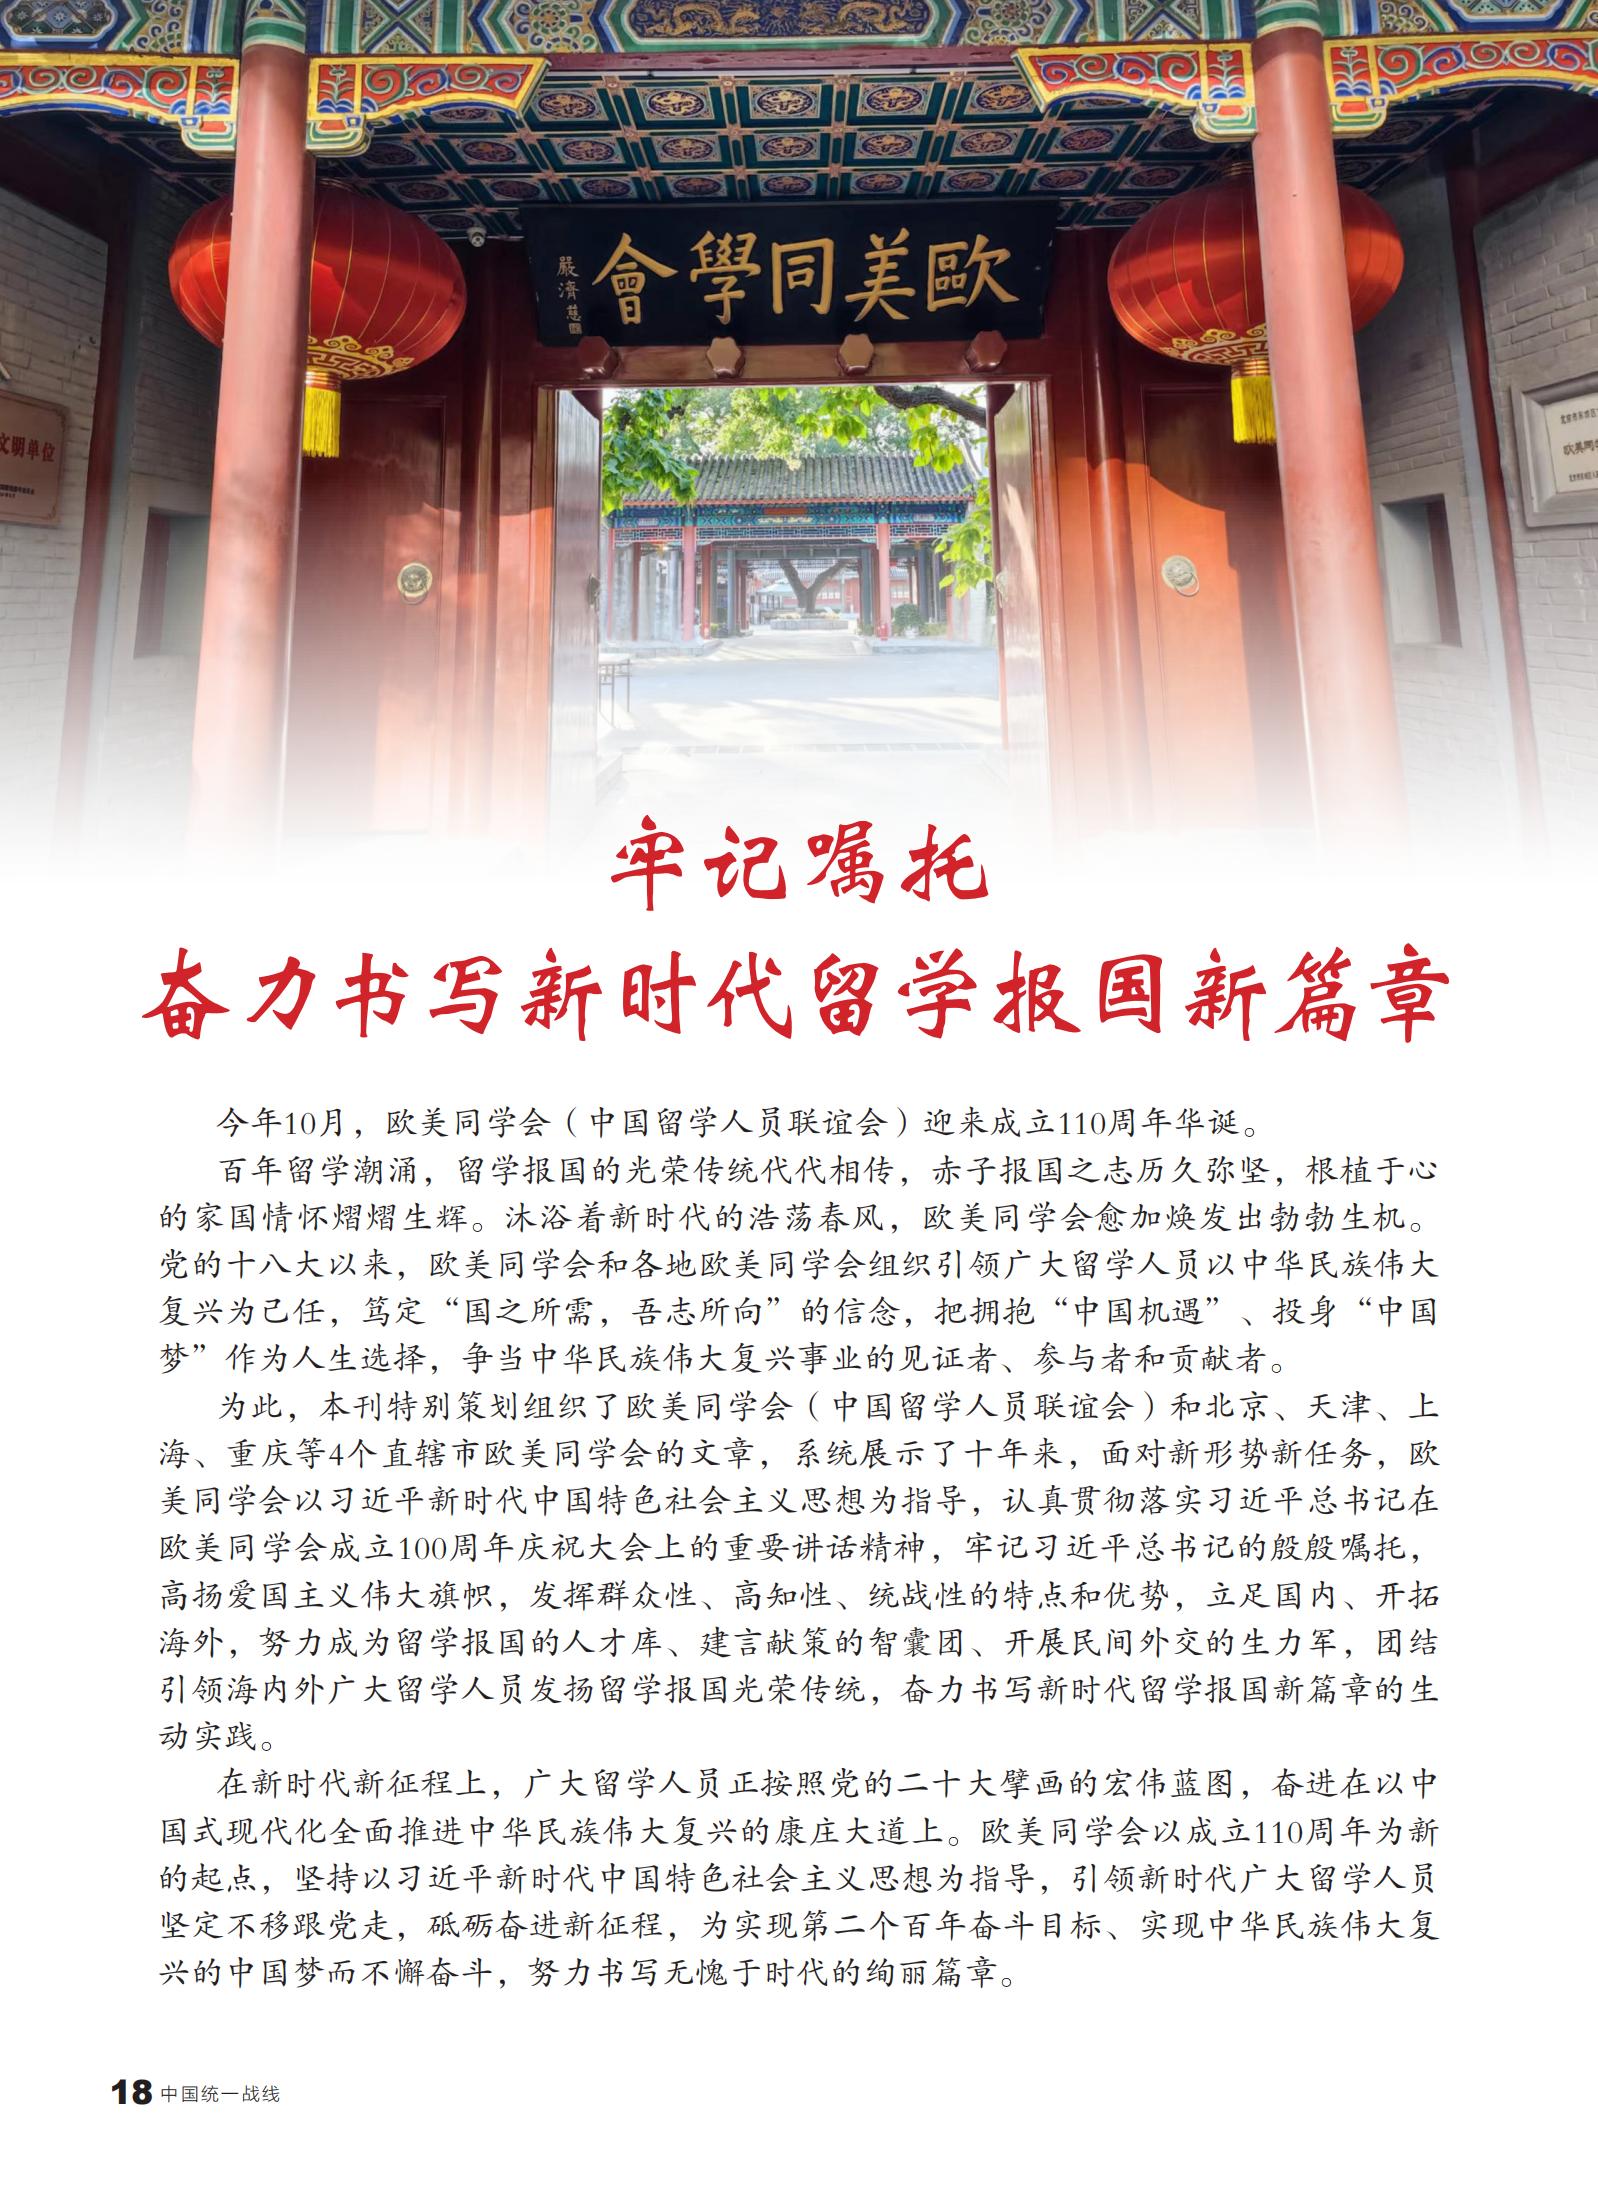 中国统一战线杂志专题报道欧美同学会成立110周年